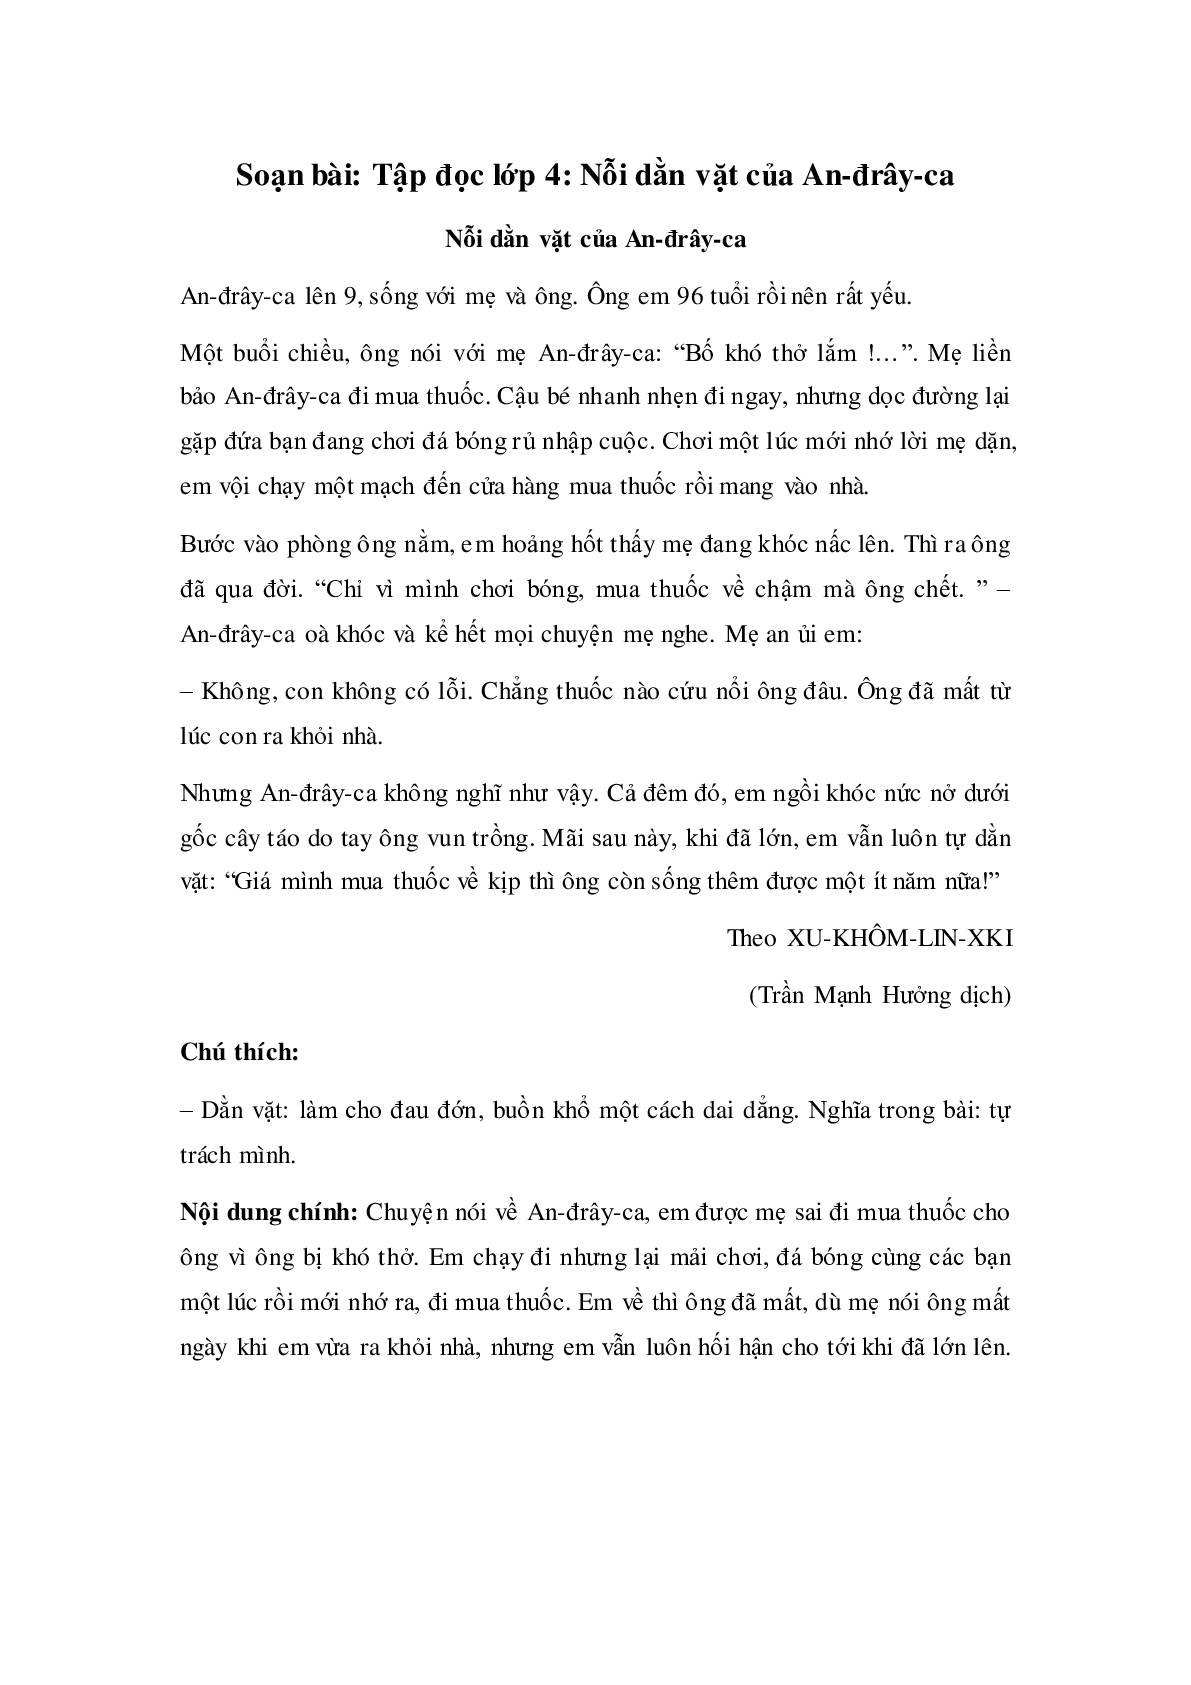 Soạn Tiếng Việt lớp 4: Tập đọc: Nỗi dằn vặt của An-đrây-ca mới nhất (trang 1)